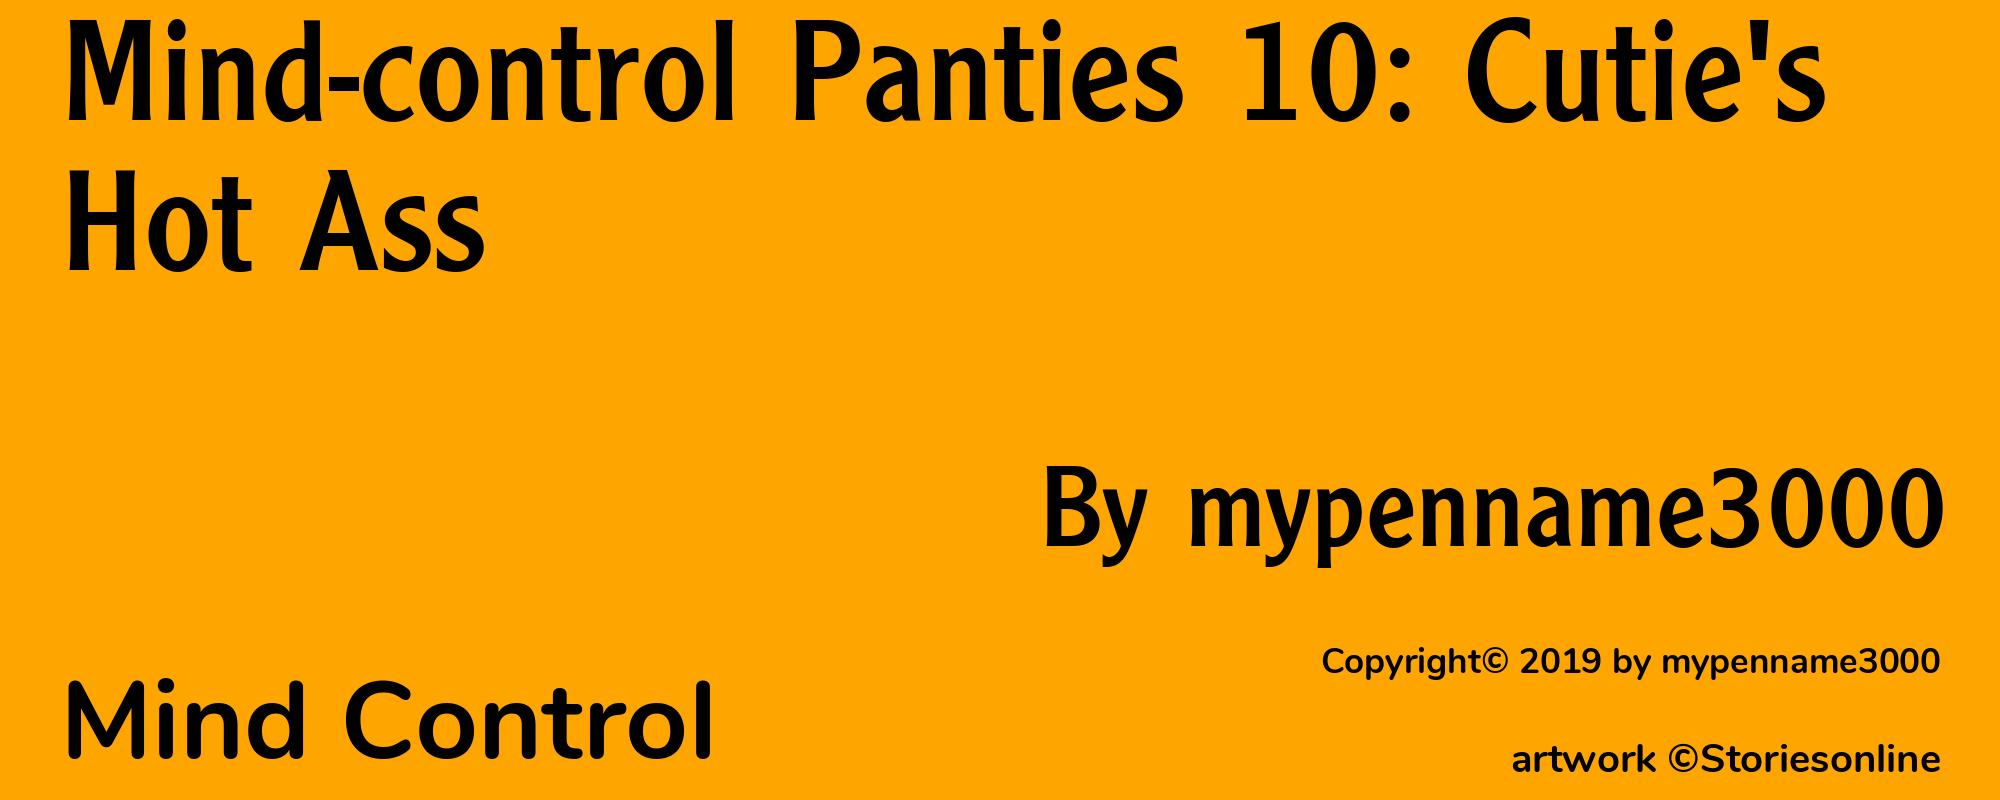 Mind-control Panties 10: Cutie's Hot Ass - Cover